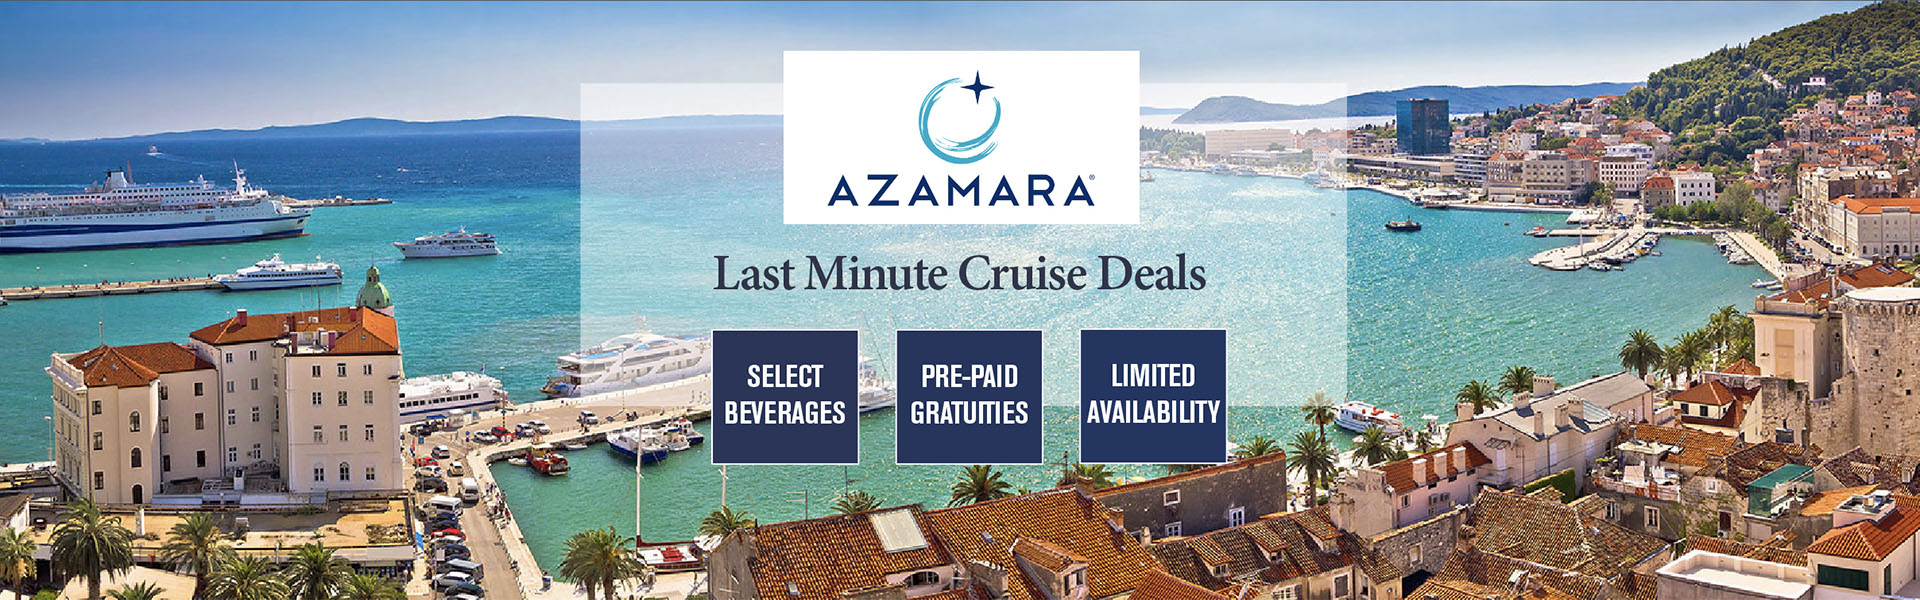 Azamara Cruises Last Minute Deals